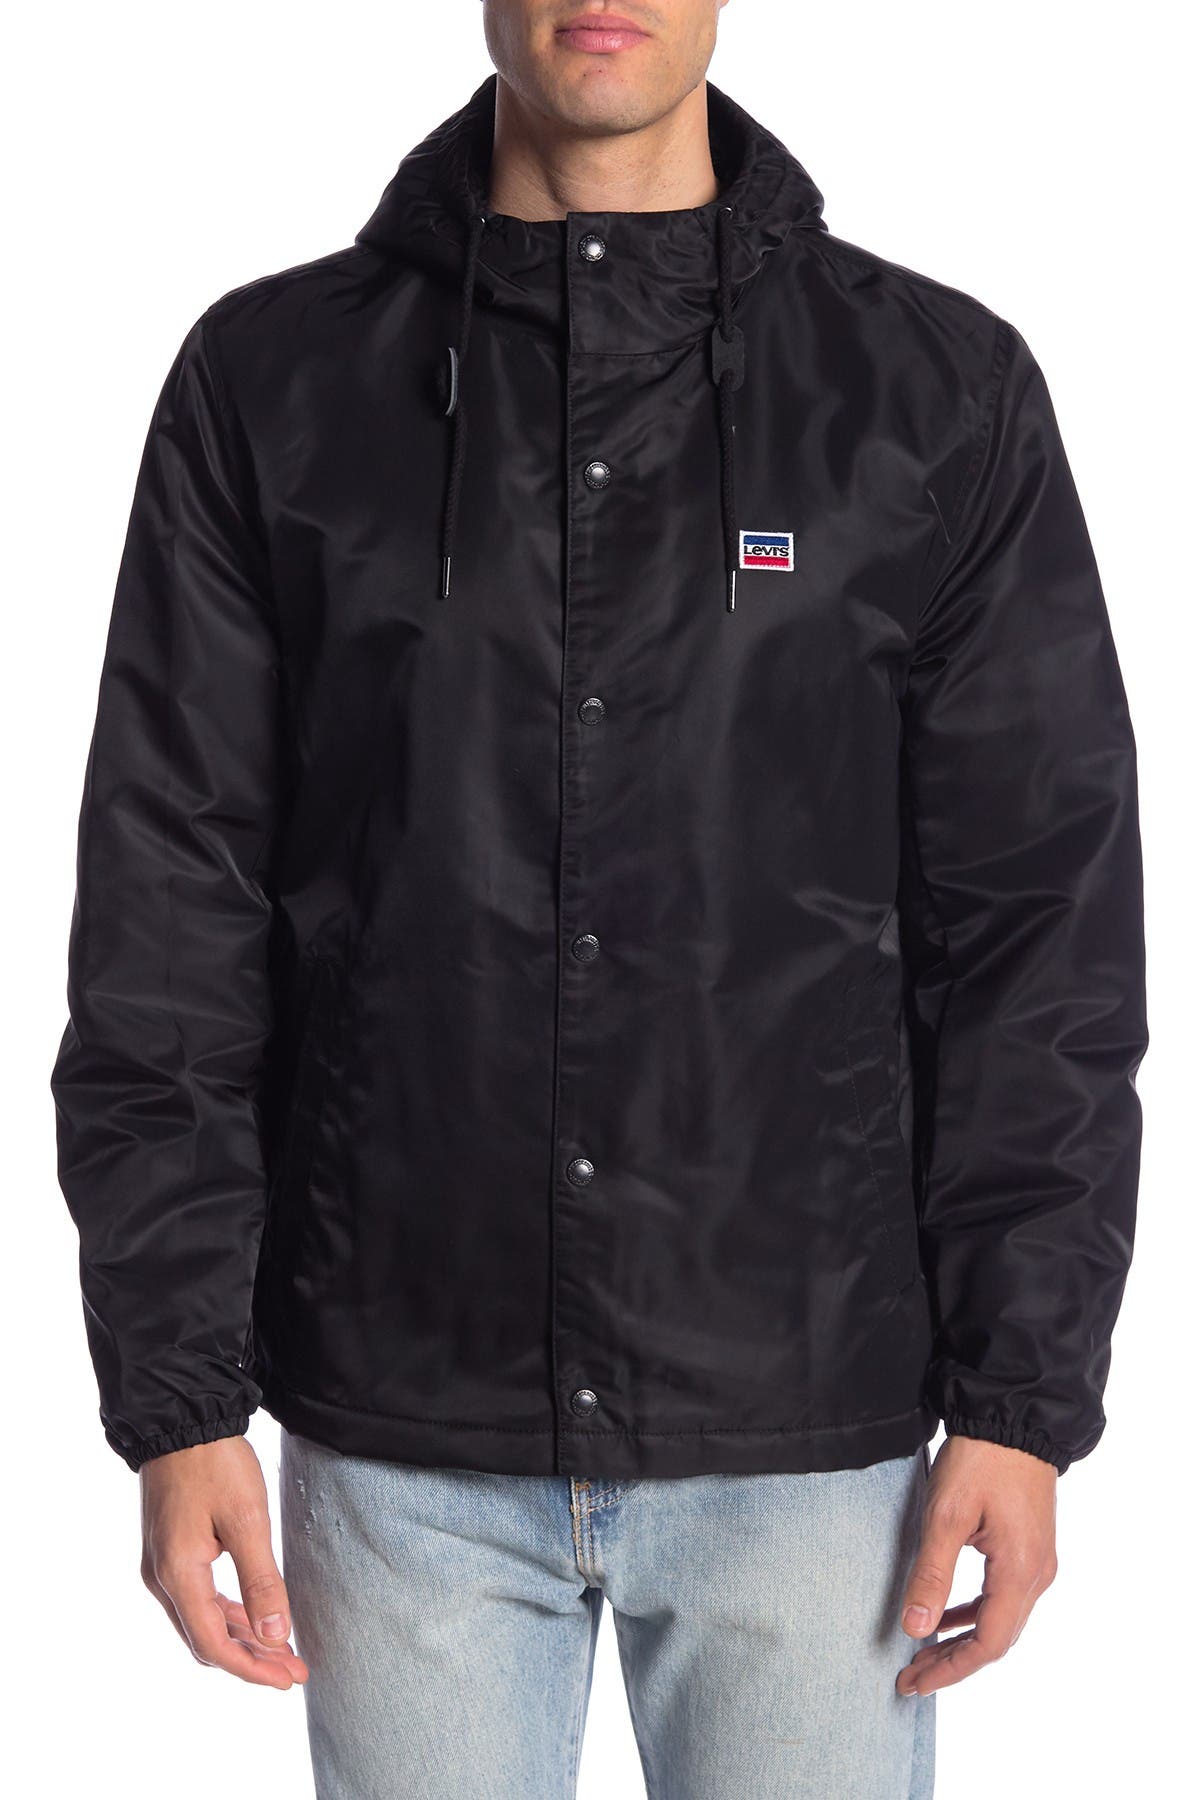 levis jacket 54163